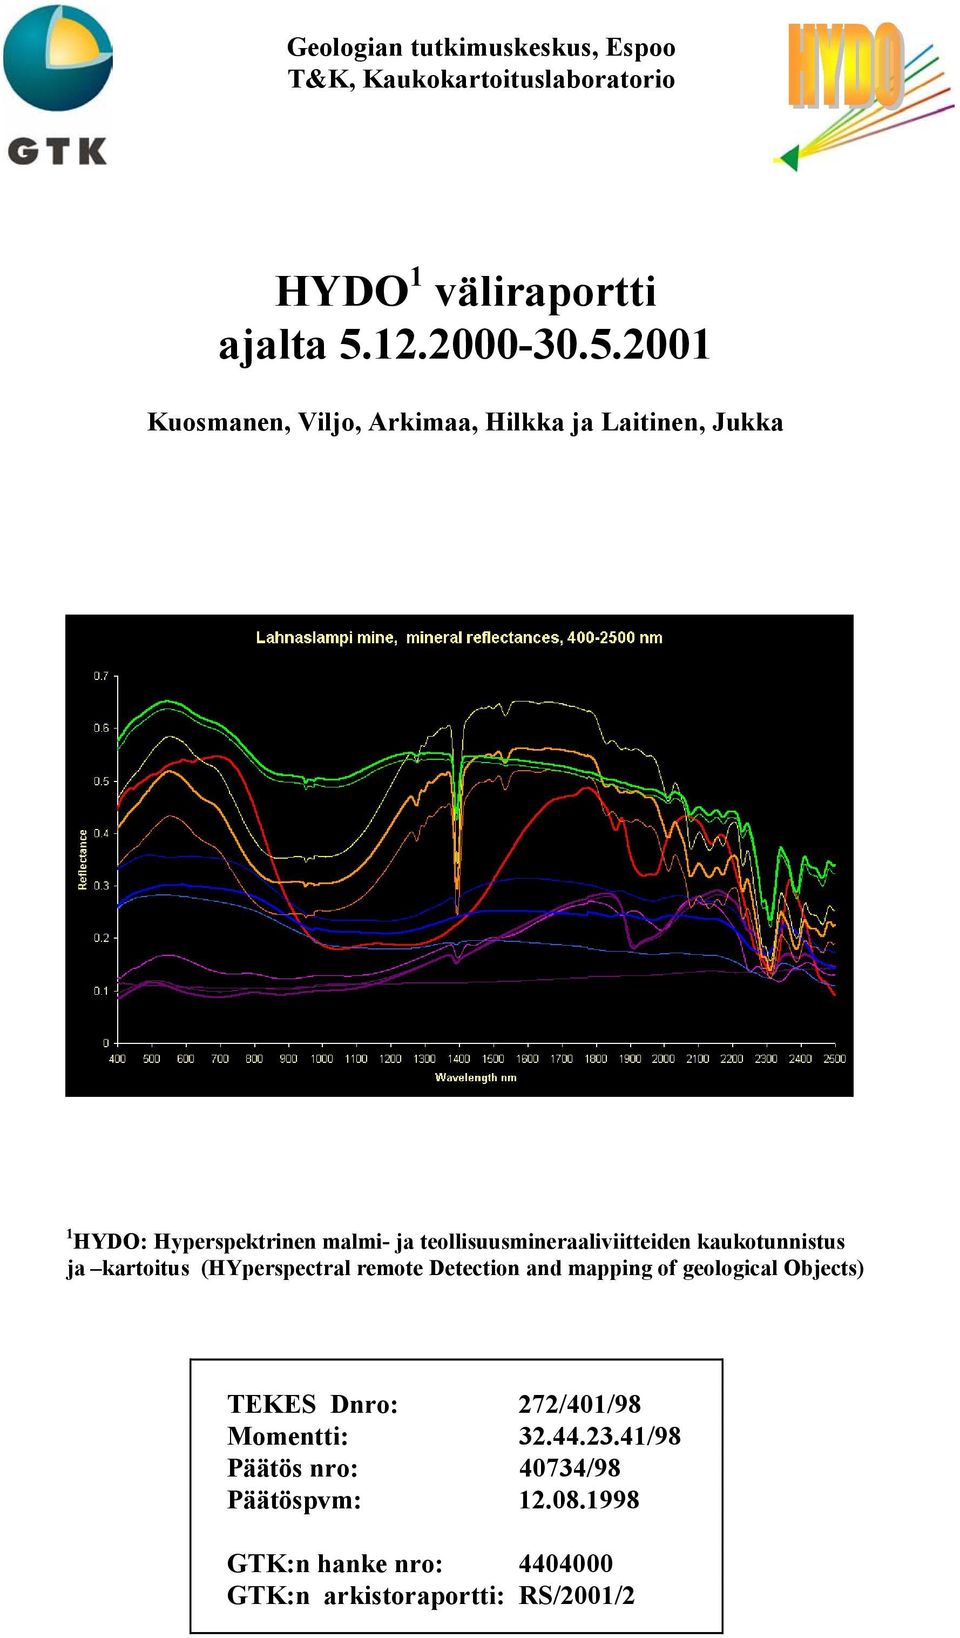 2001 Kuosmanen, Viljo, Arkimaa, Hilkka ja Laitinen, Jukka 1 HYDO: Hyperspektrinen malmi- ja